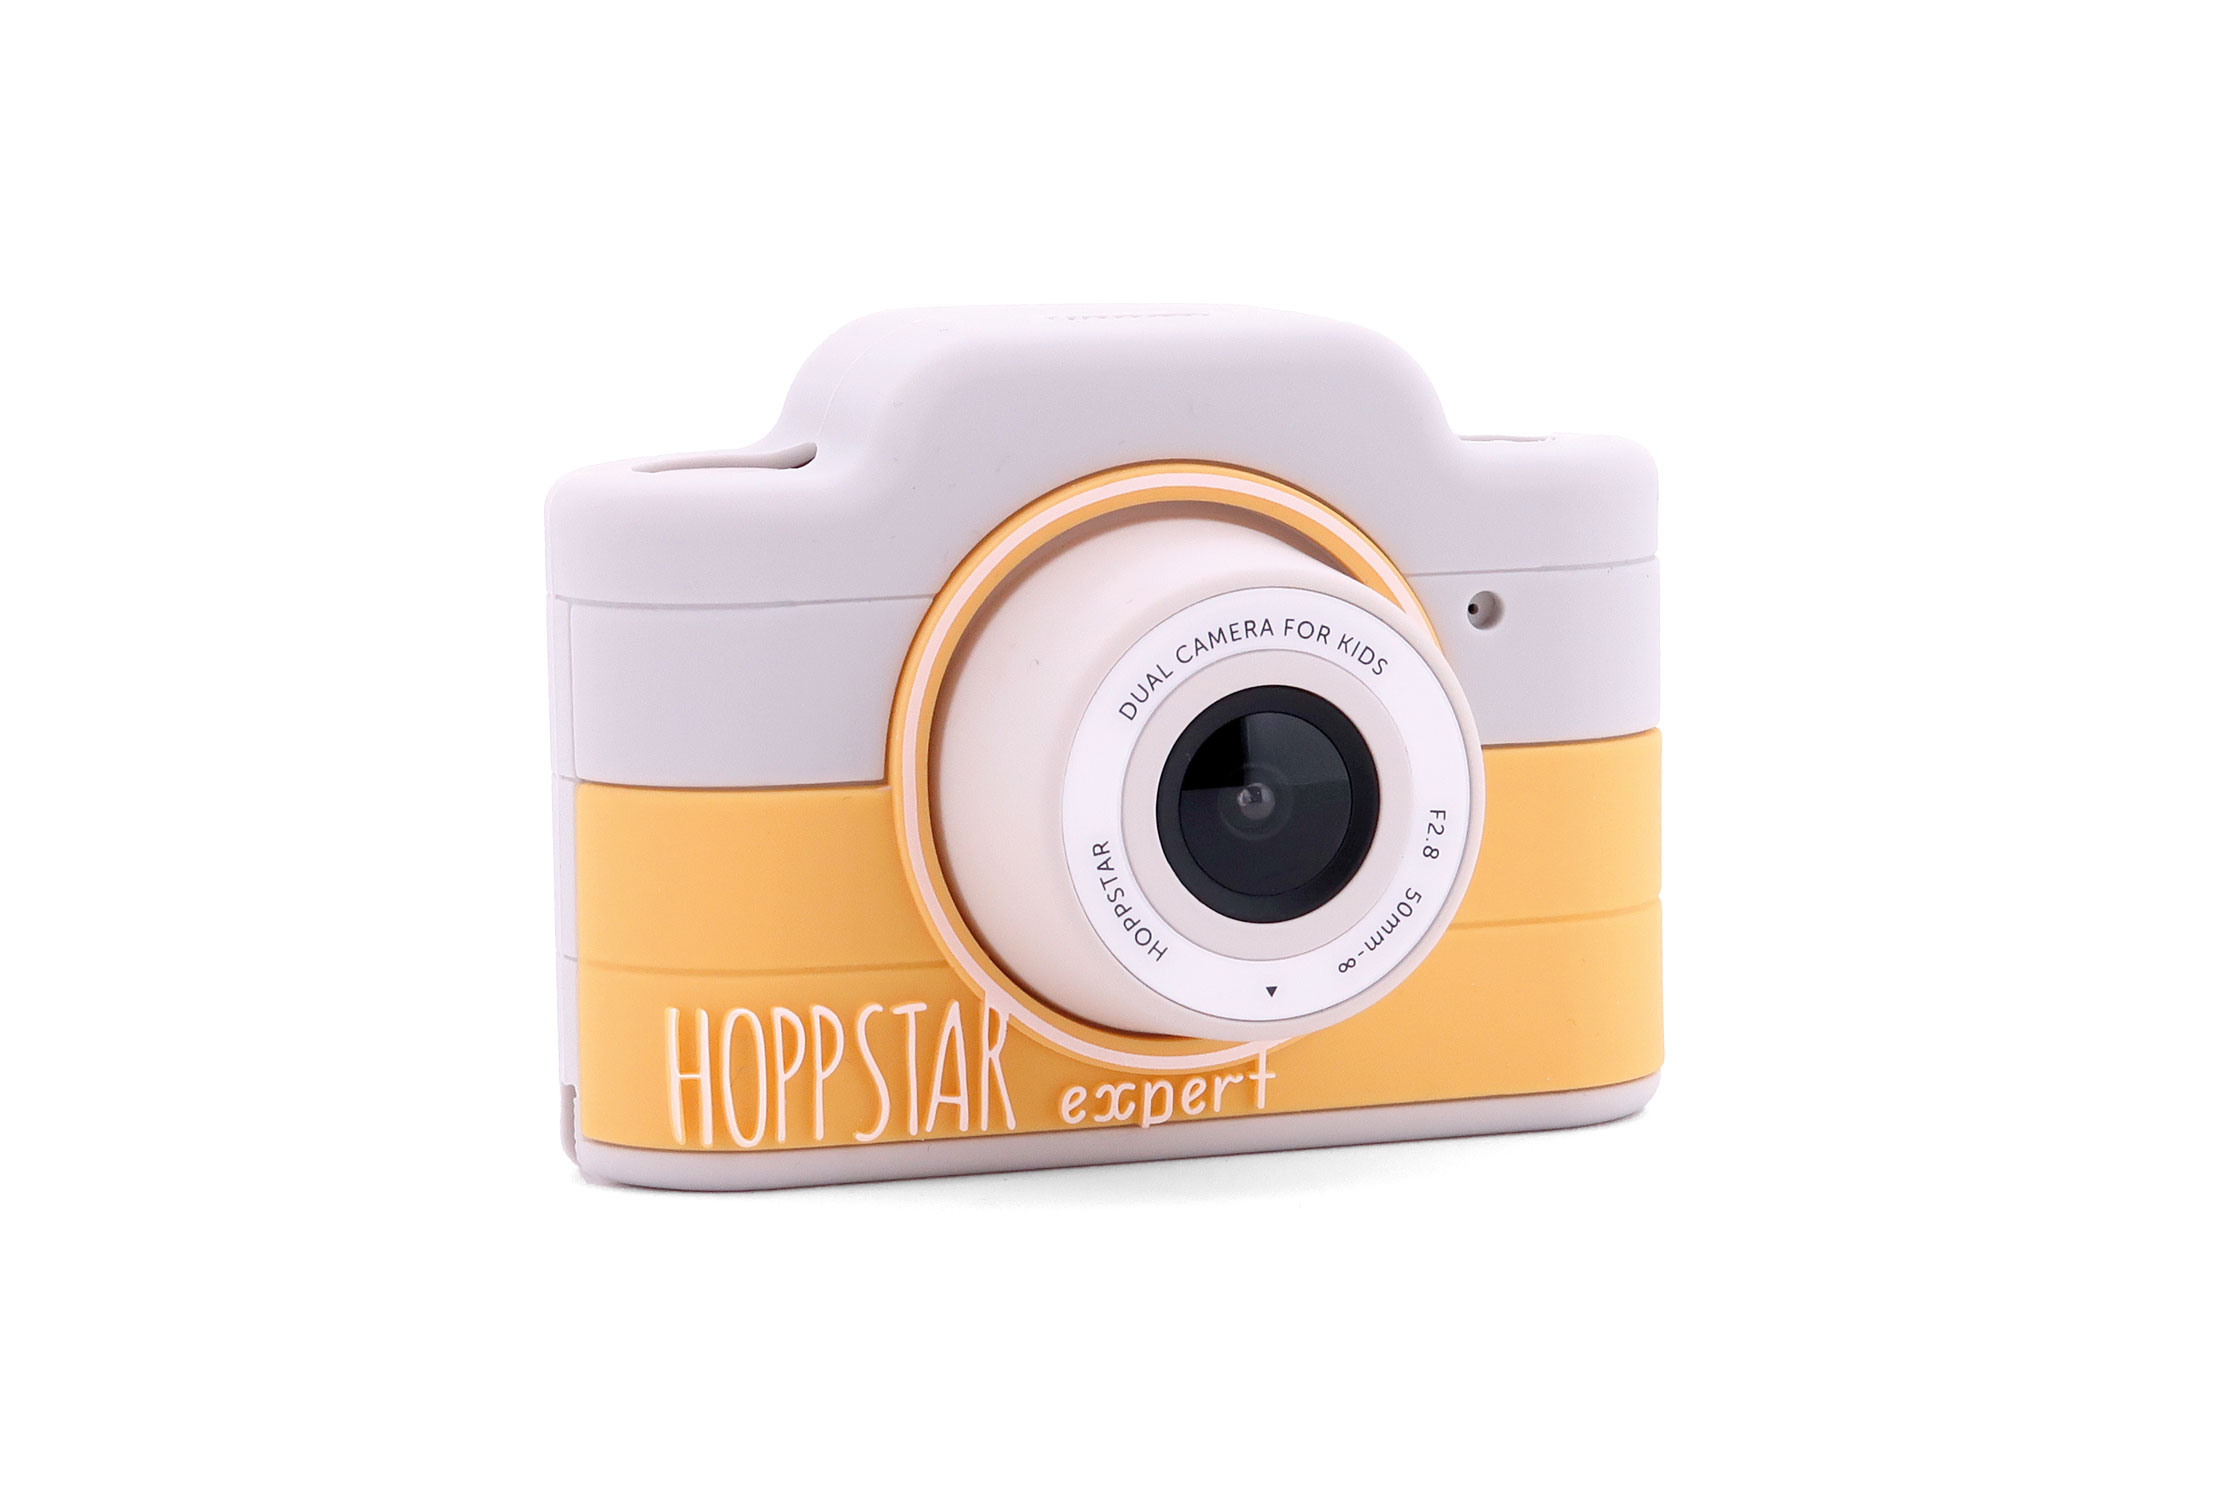 Hoppstar Expert Kamera mit Citron (gelb/weiß) Silikonhülle, Frontalansicht leicht schräg